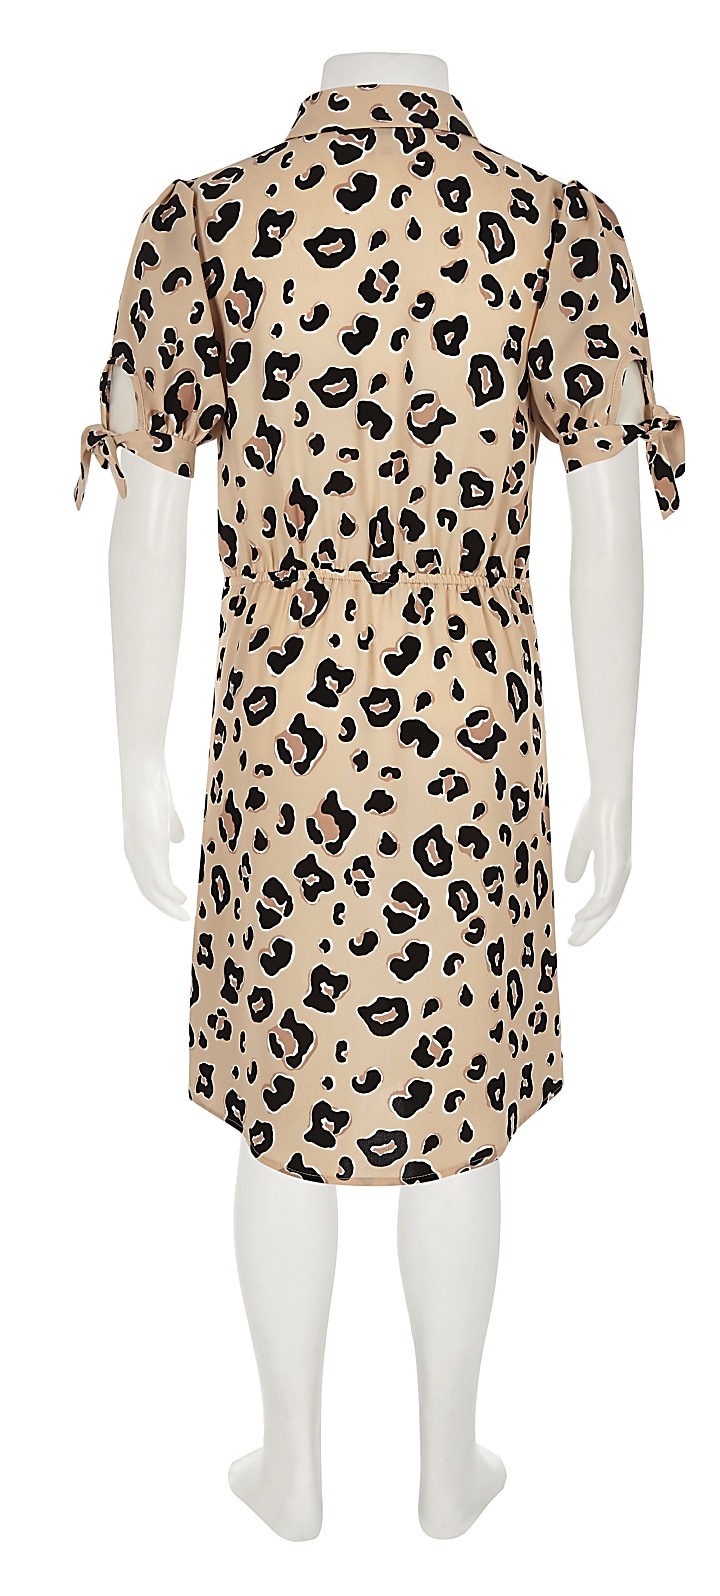 Girls brown leopard print knot shirt dress